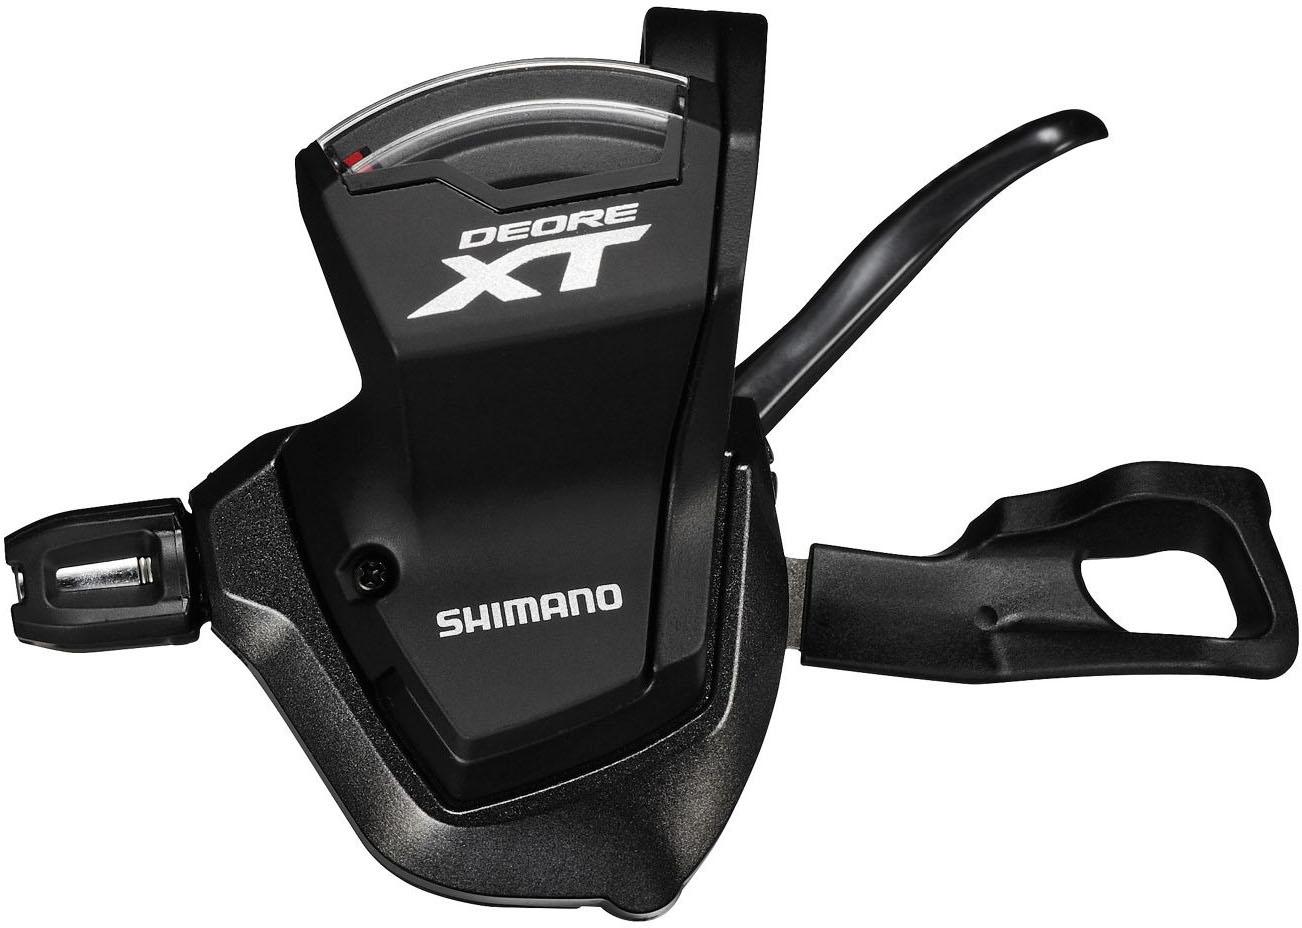 Shimano Xt M8000 11 Speed Trigger Shifter - Black